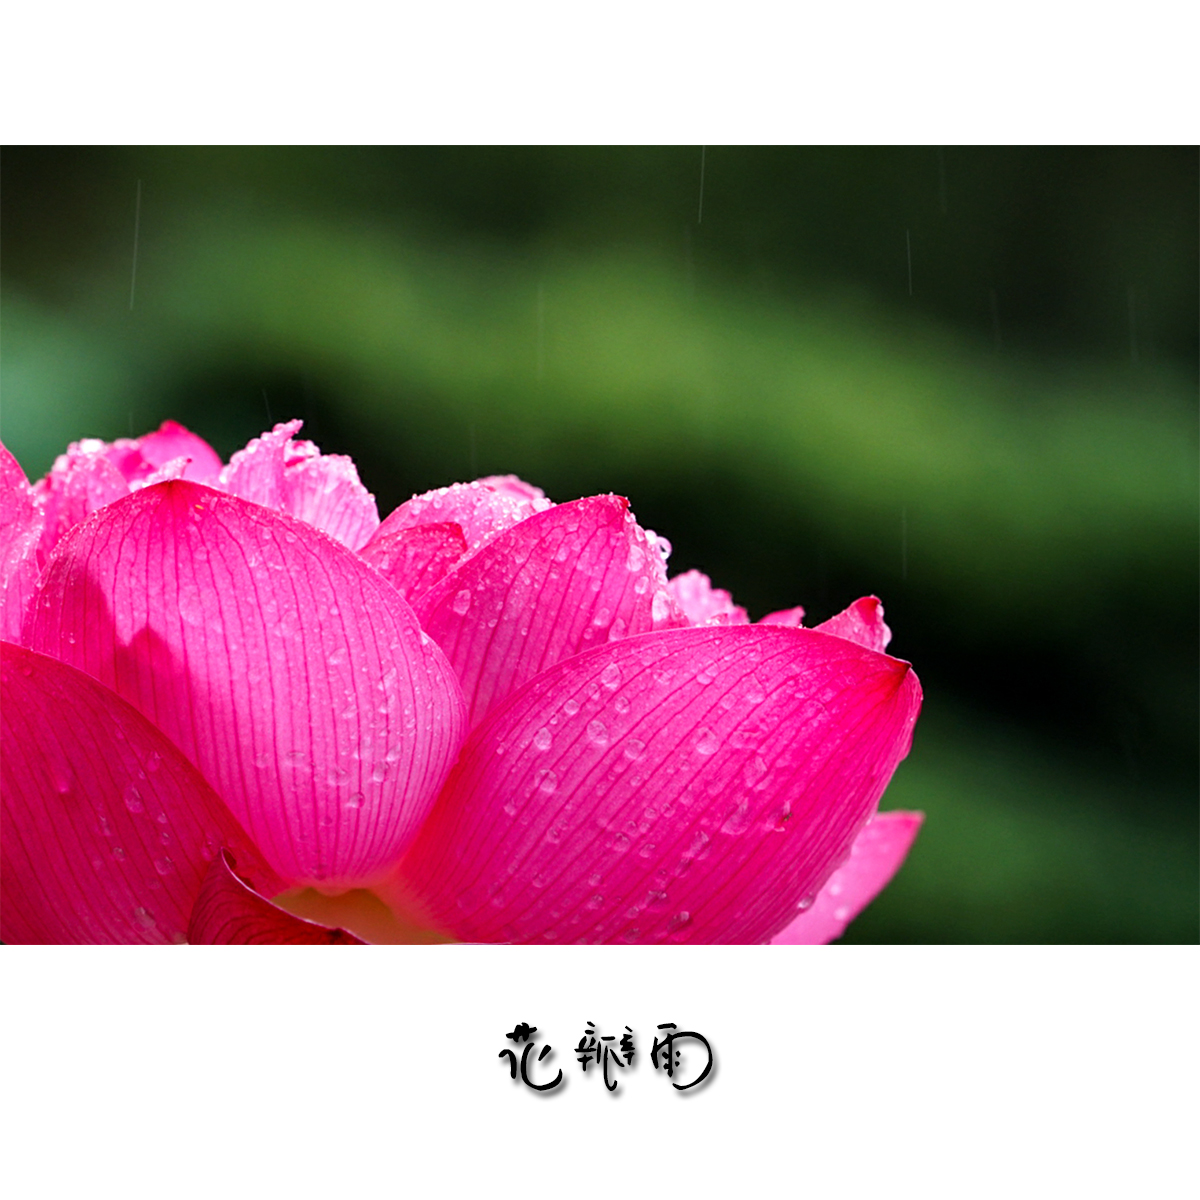 雨滴 雨后 玫瑰花瓣 - Pixabay上的免费照片 - Pixabay